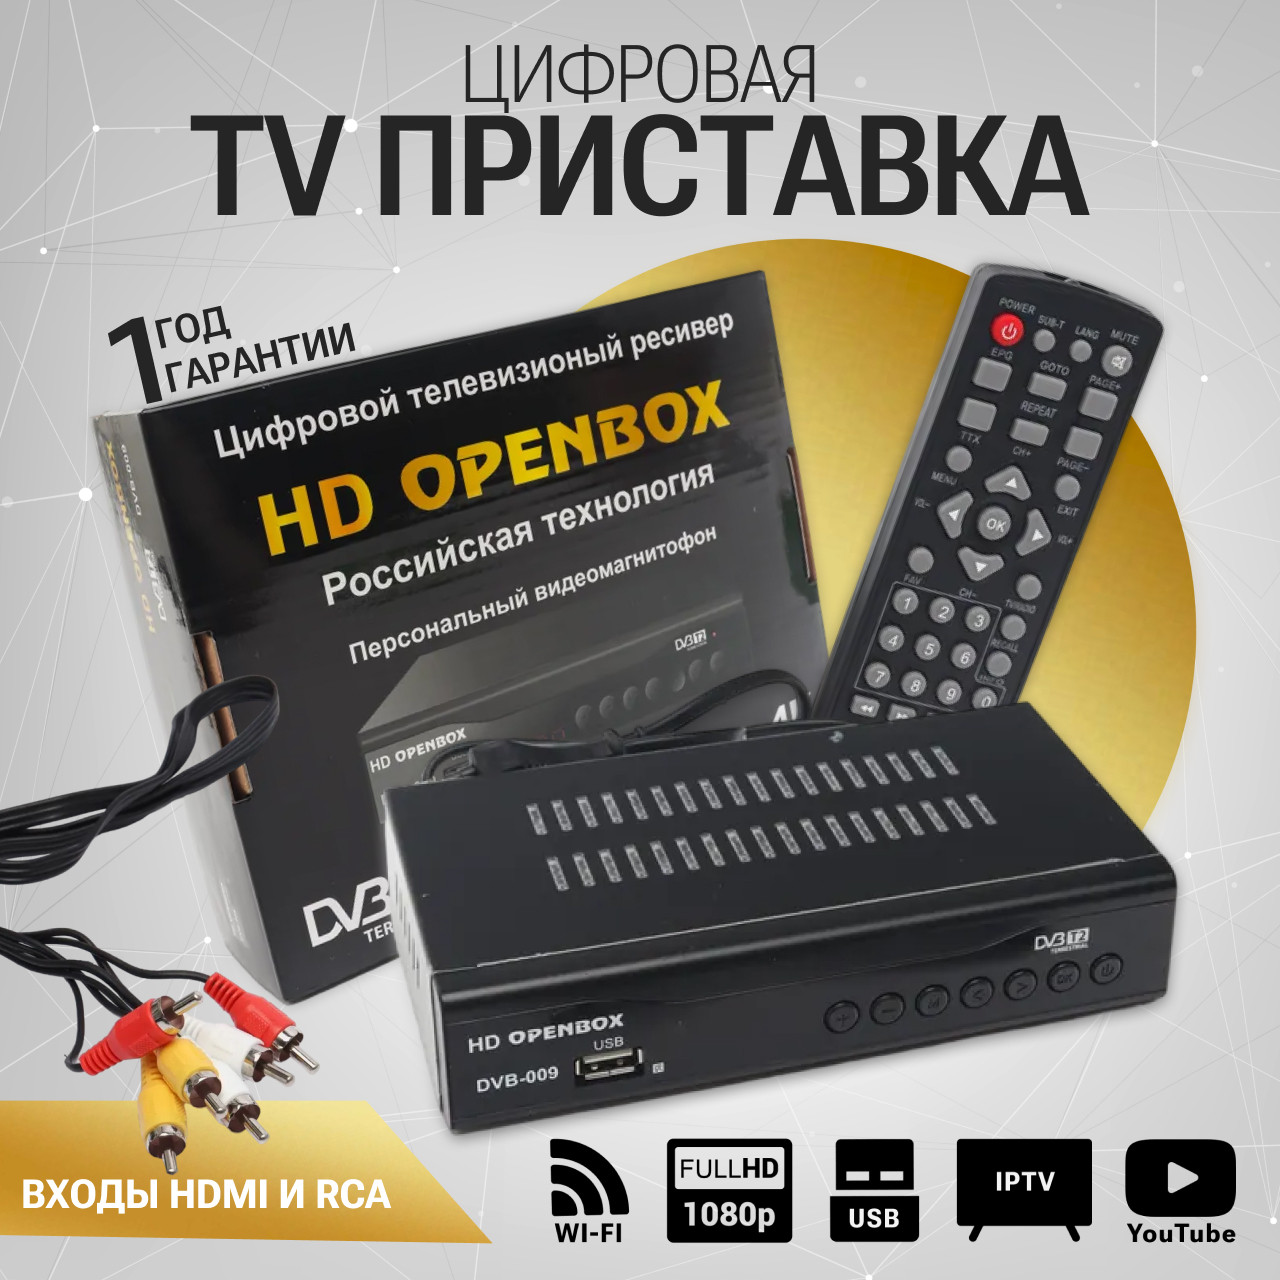 Цифровой эфирный ресивер HD OPENBOX DVB-009 DVB-T2/DVB-T/DVB-C